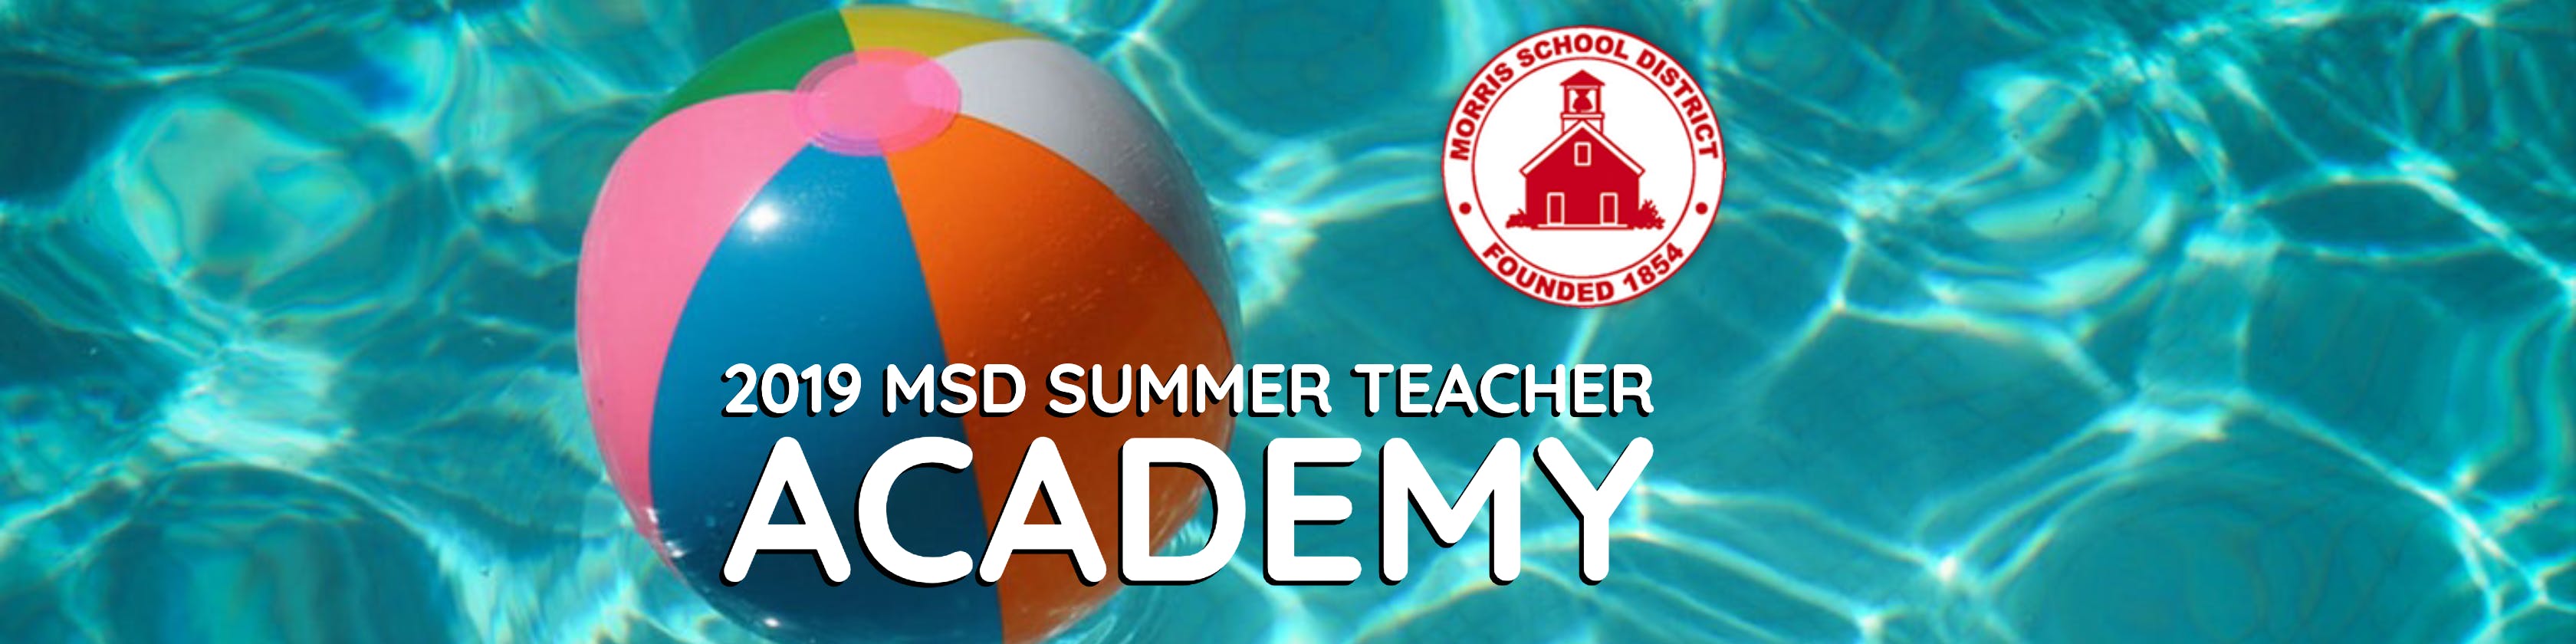 2019 MSD Summer Teacher Academy